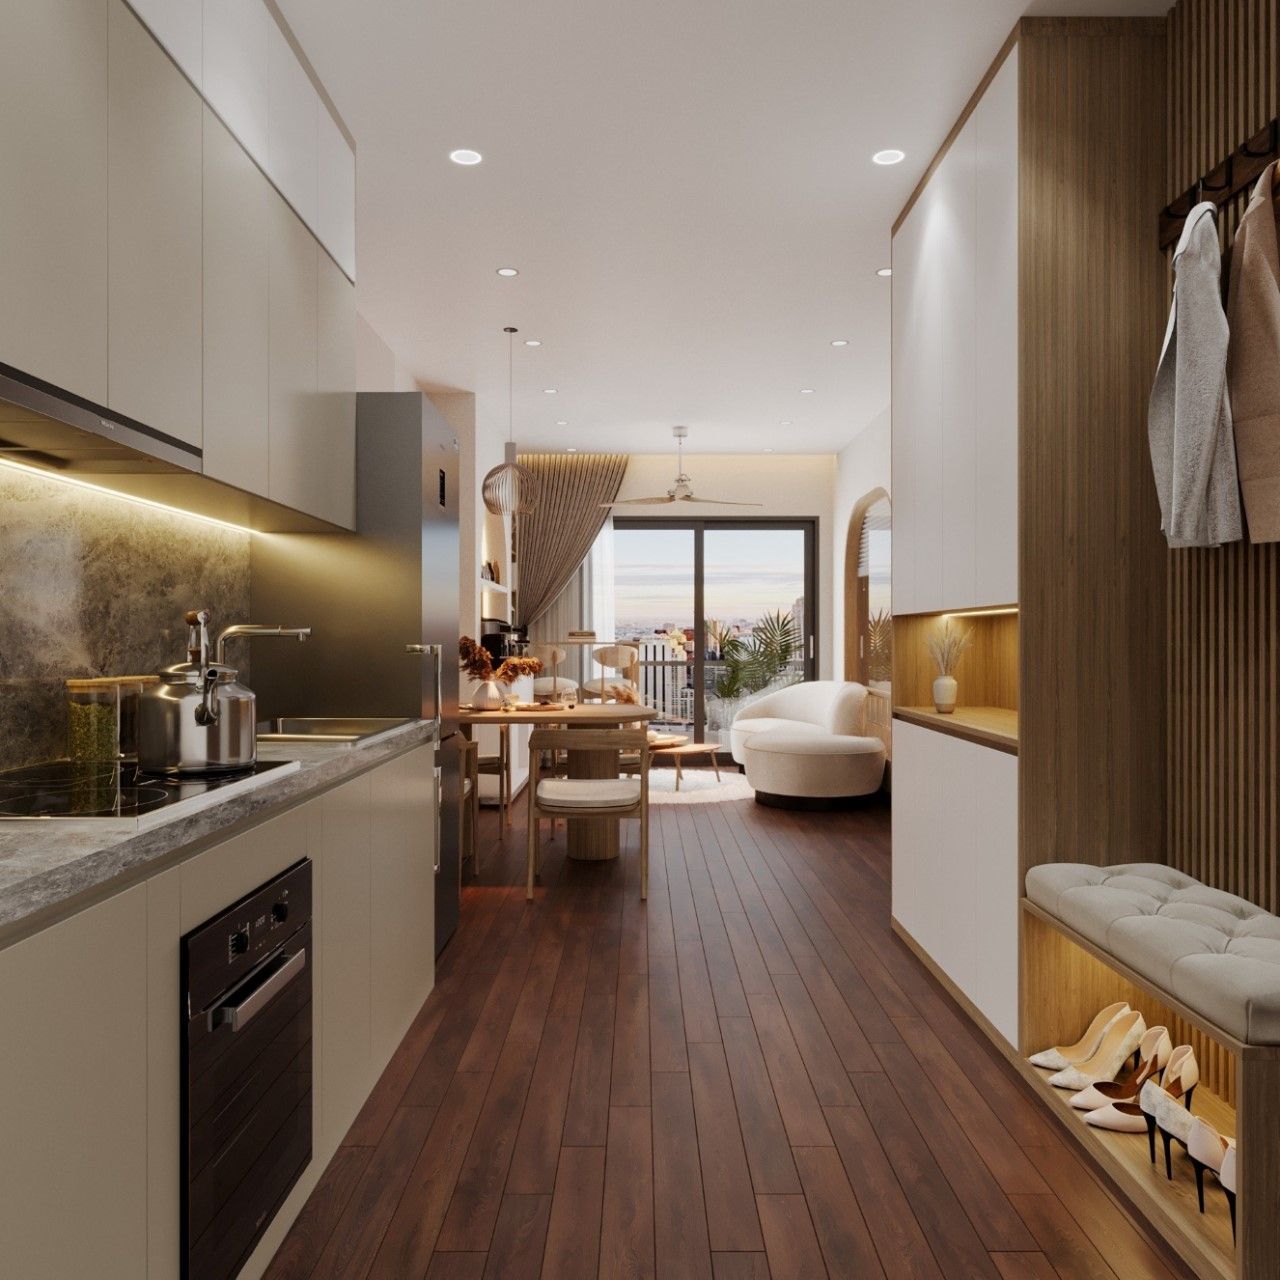 Thiết kế căn hộ theo phong cách hiện đại ấn tượng